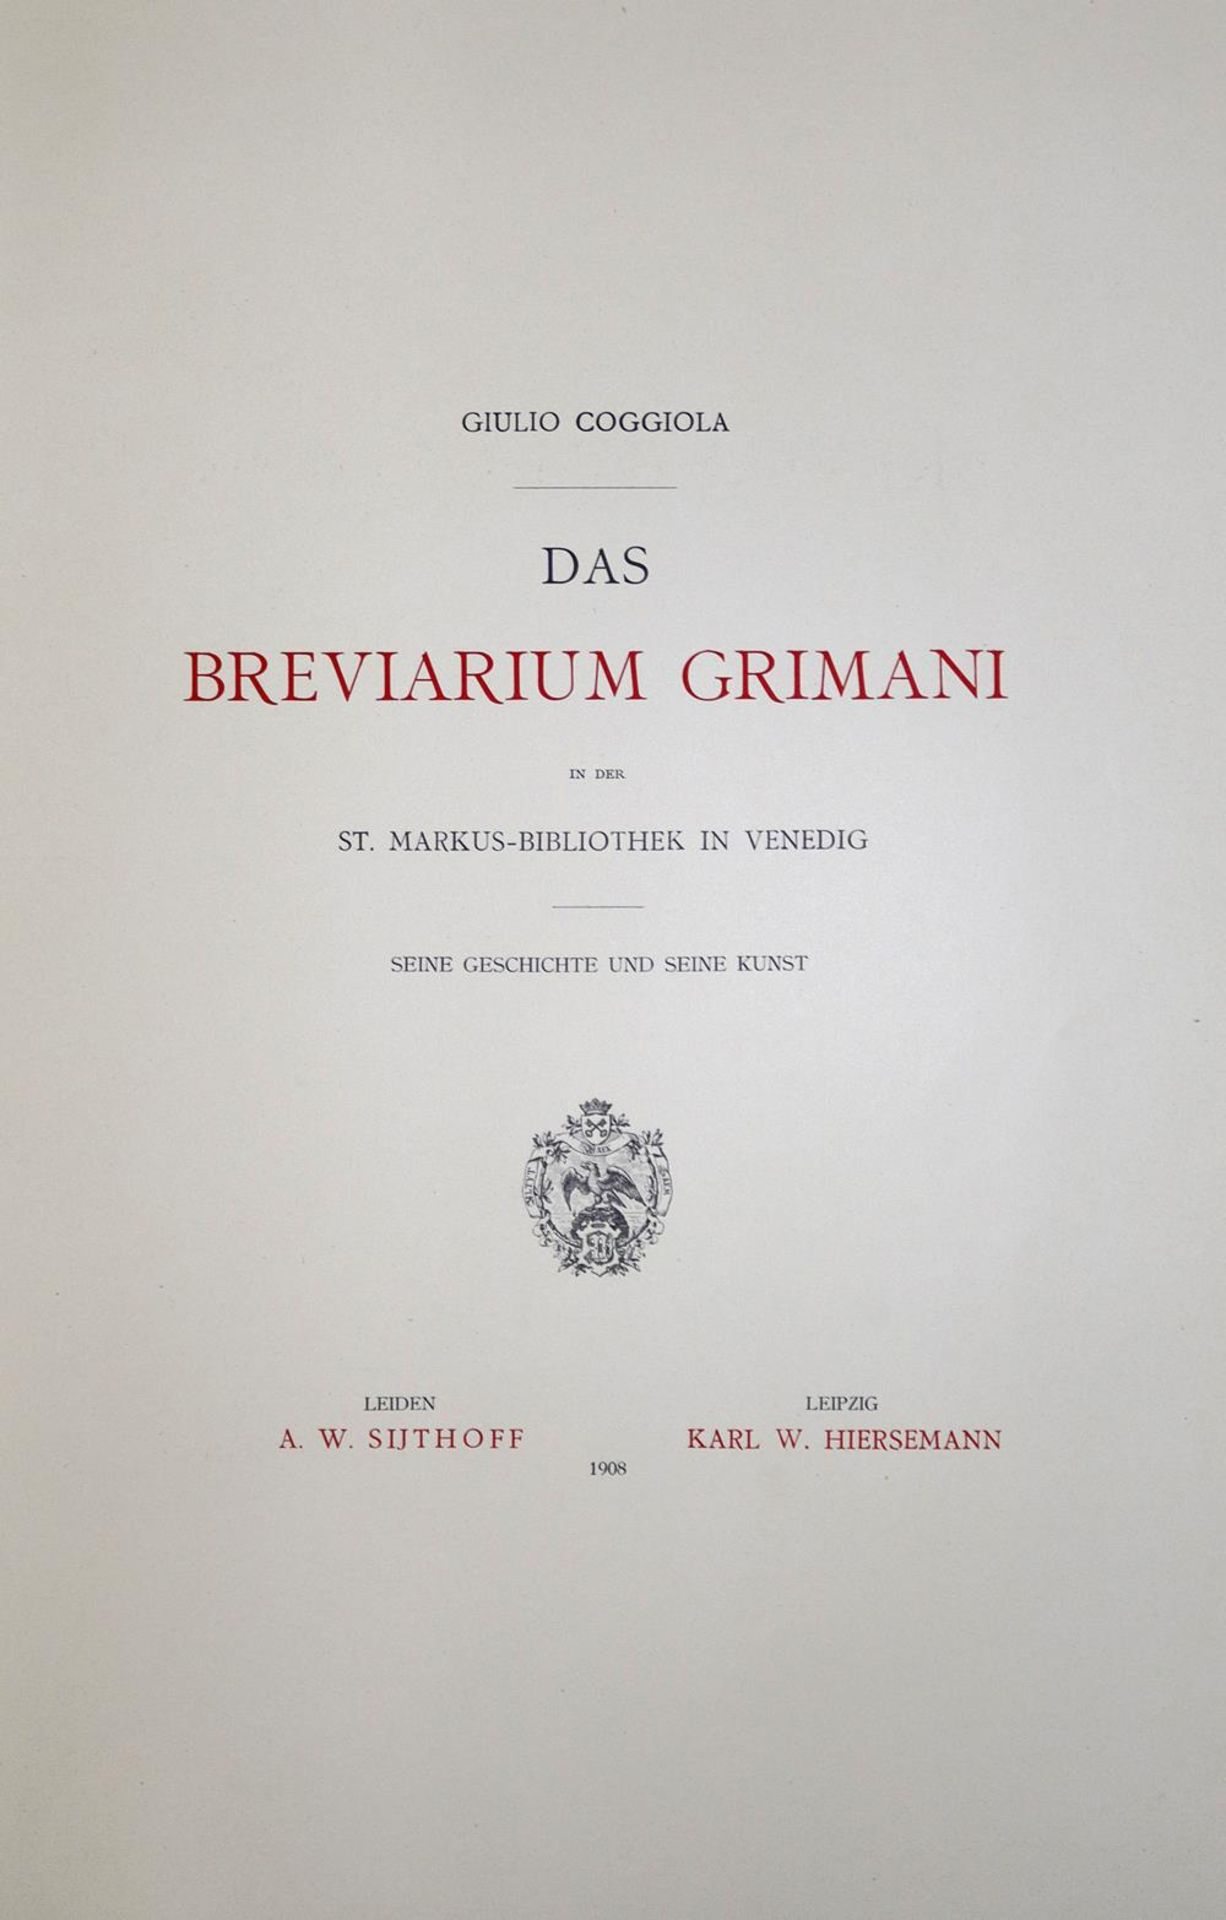 Breviarium Grimani, Das, - Image 2 of 2